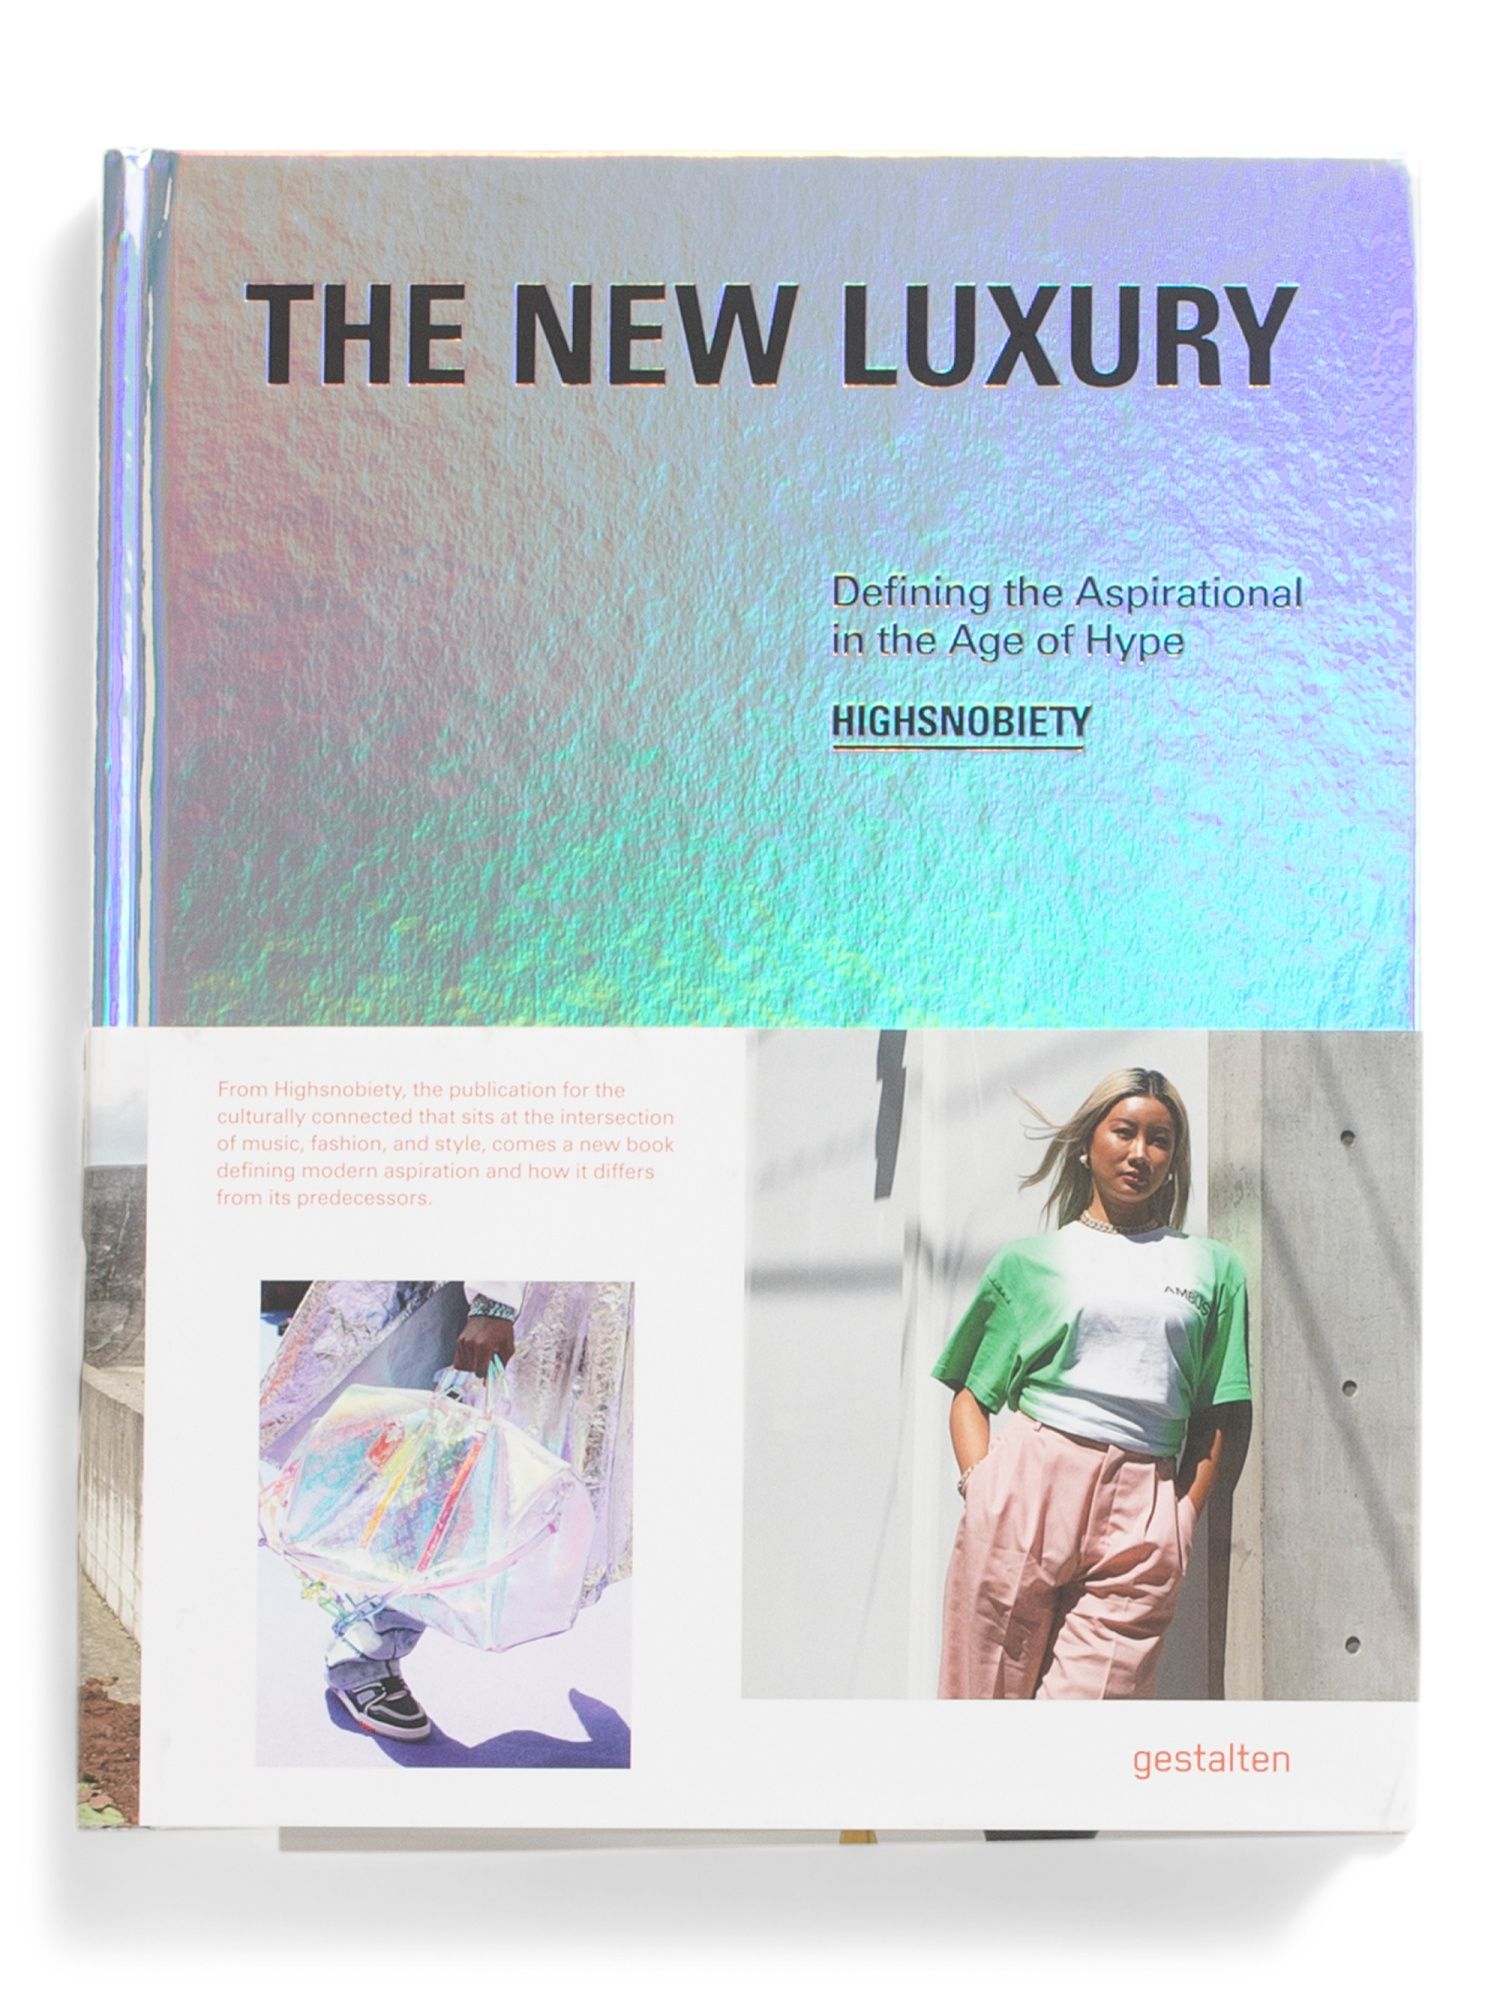 New Luxury Book | TJ Maxx